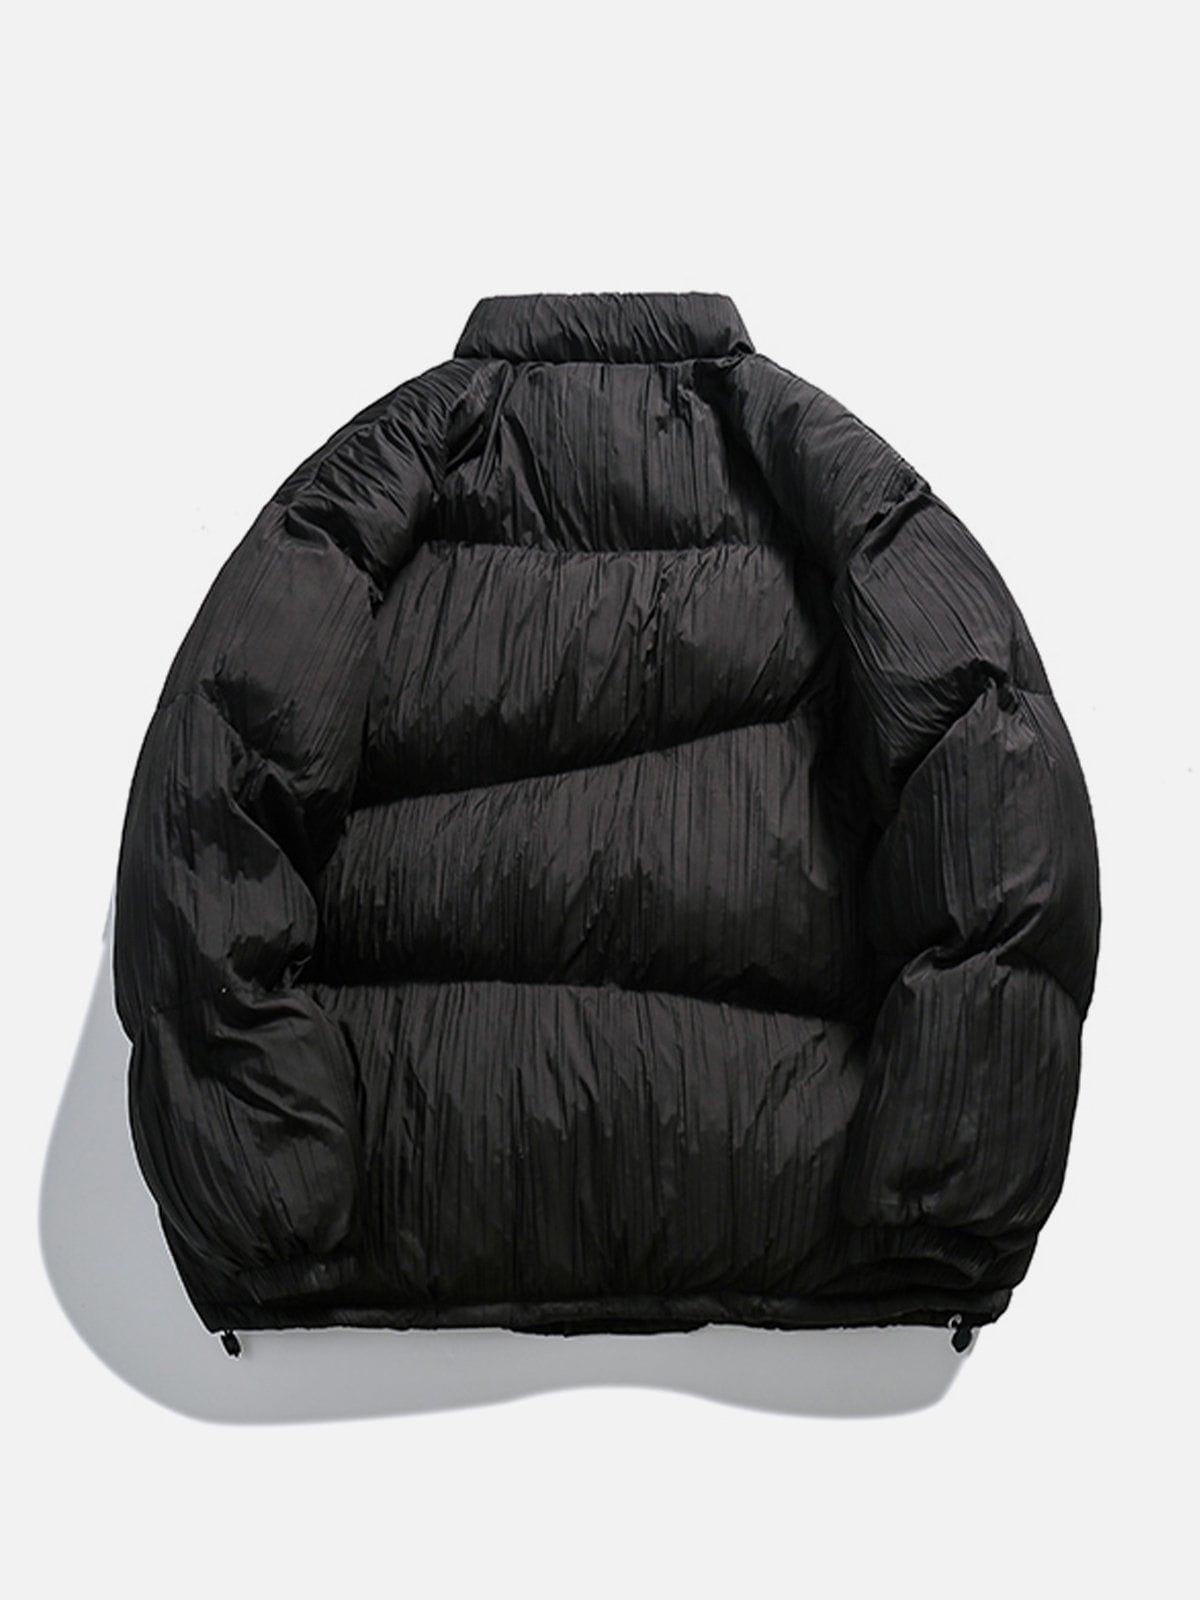 LUXENFY™ - Irregular Folds Winter Coat luxenfy.com